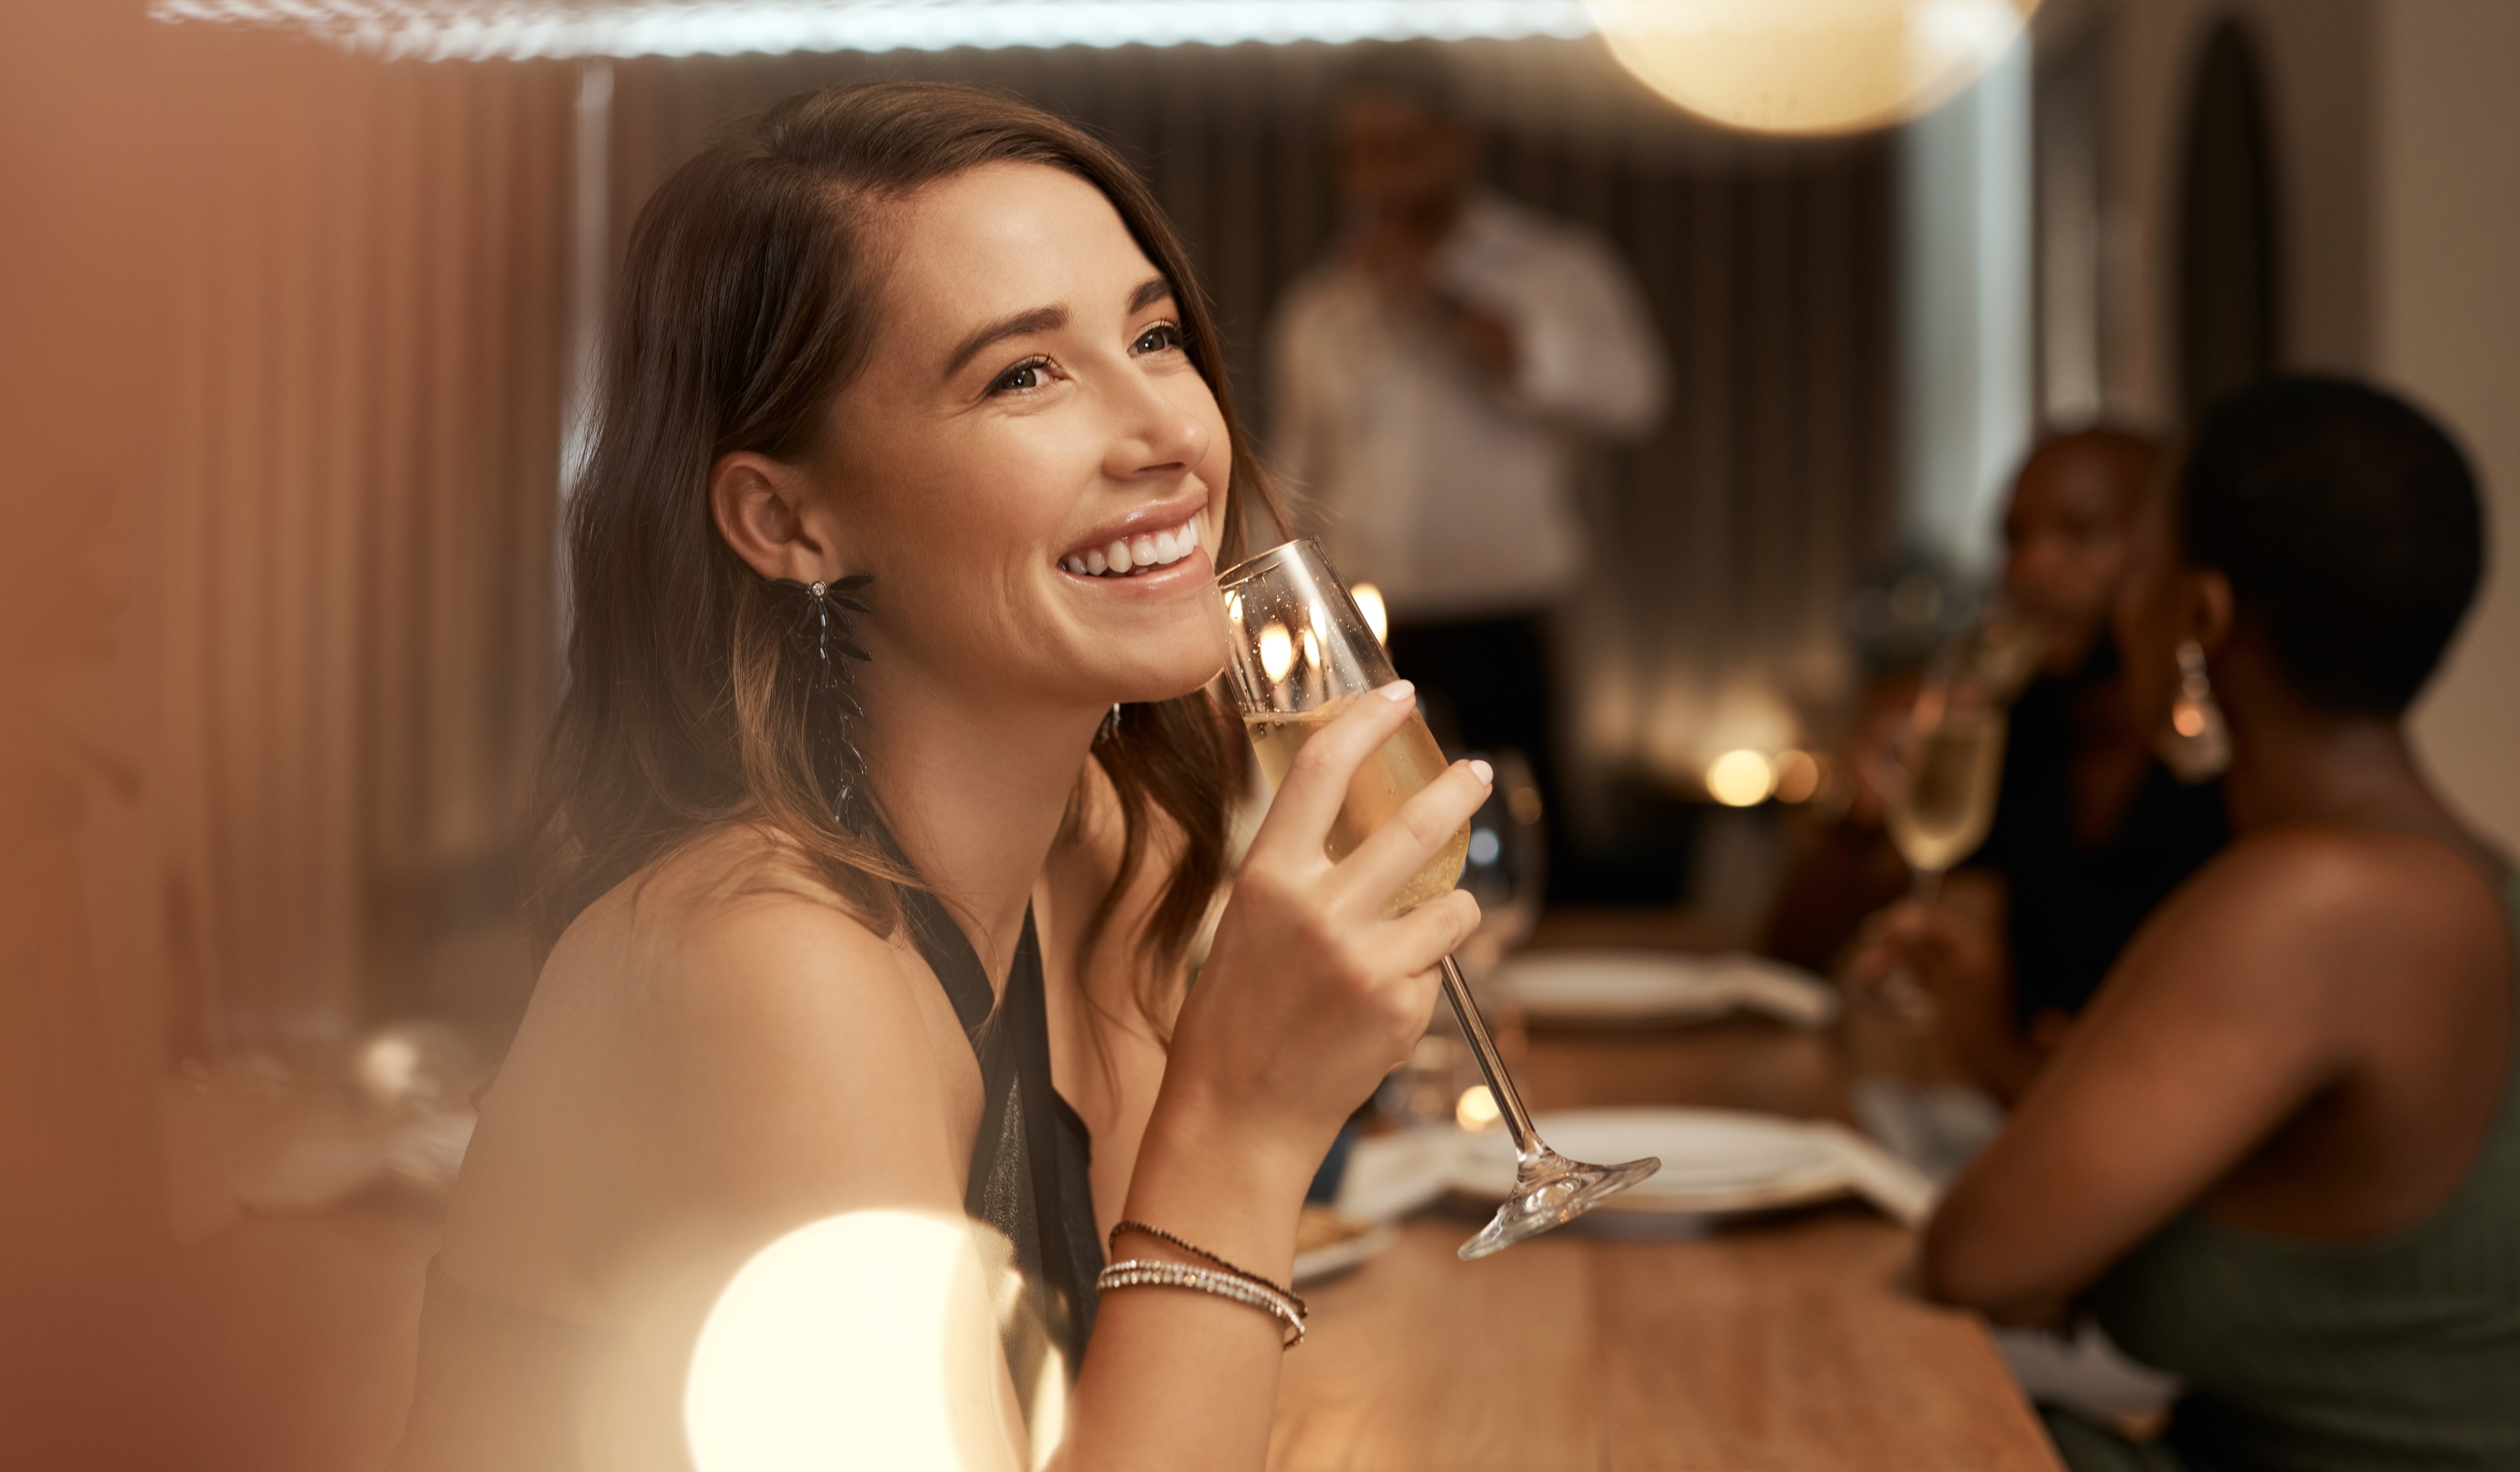 Frau hält ein Glas Champagner in einem Restaurant | Quelle: Shutterstock